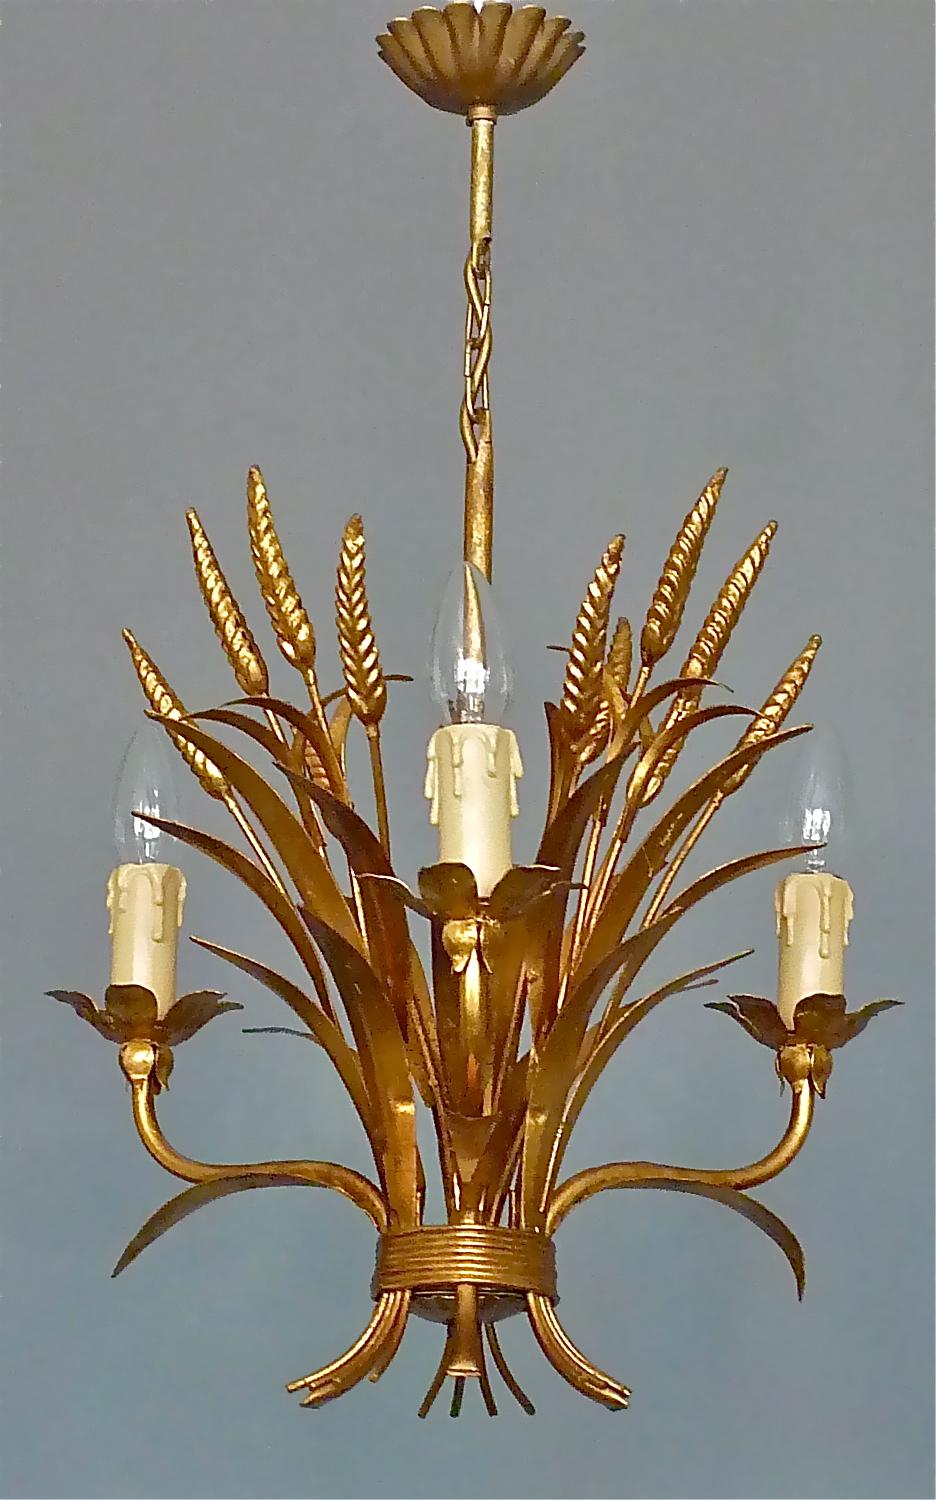 Ein florentinischer vergoldeter Metallkronleuchter im Stil von 